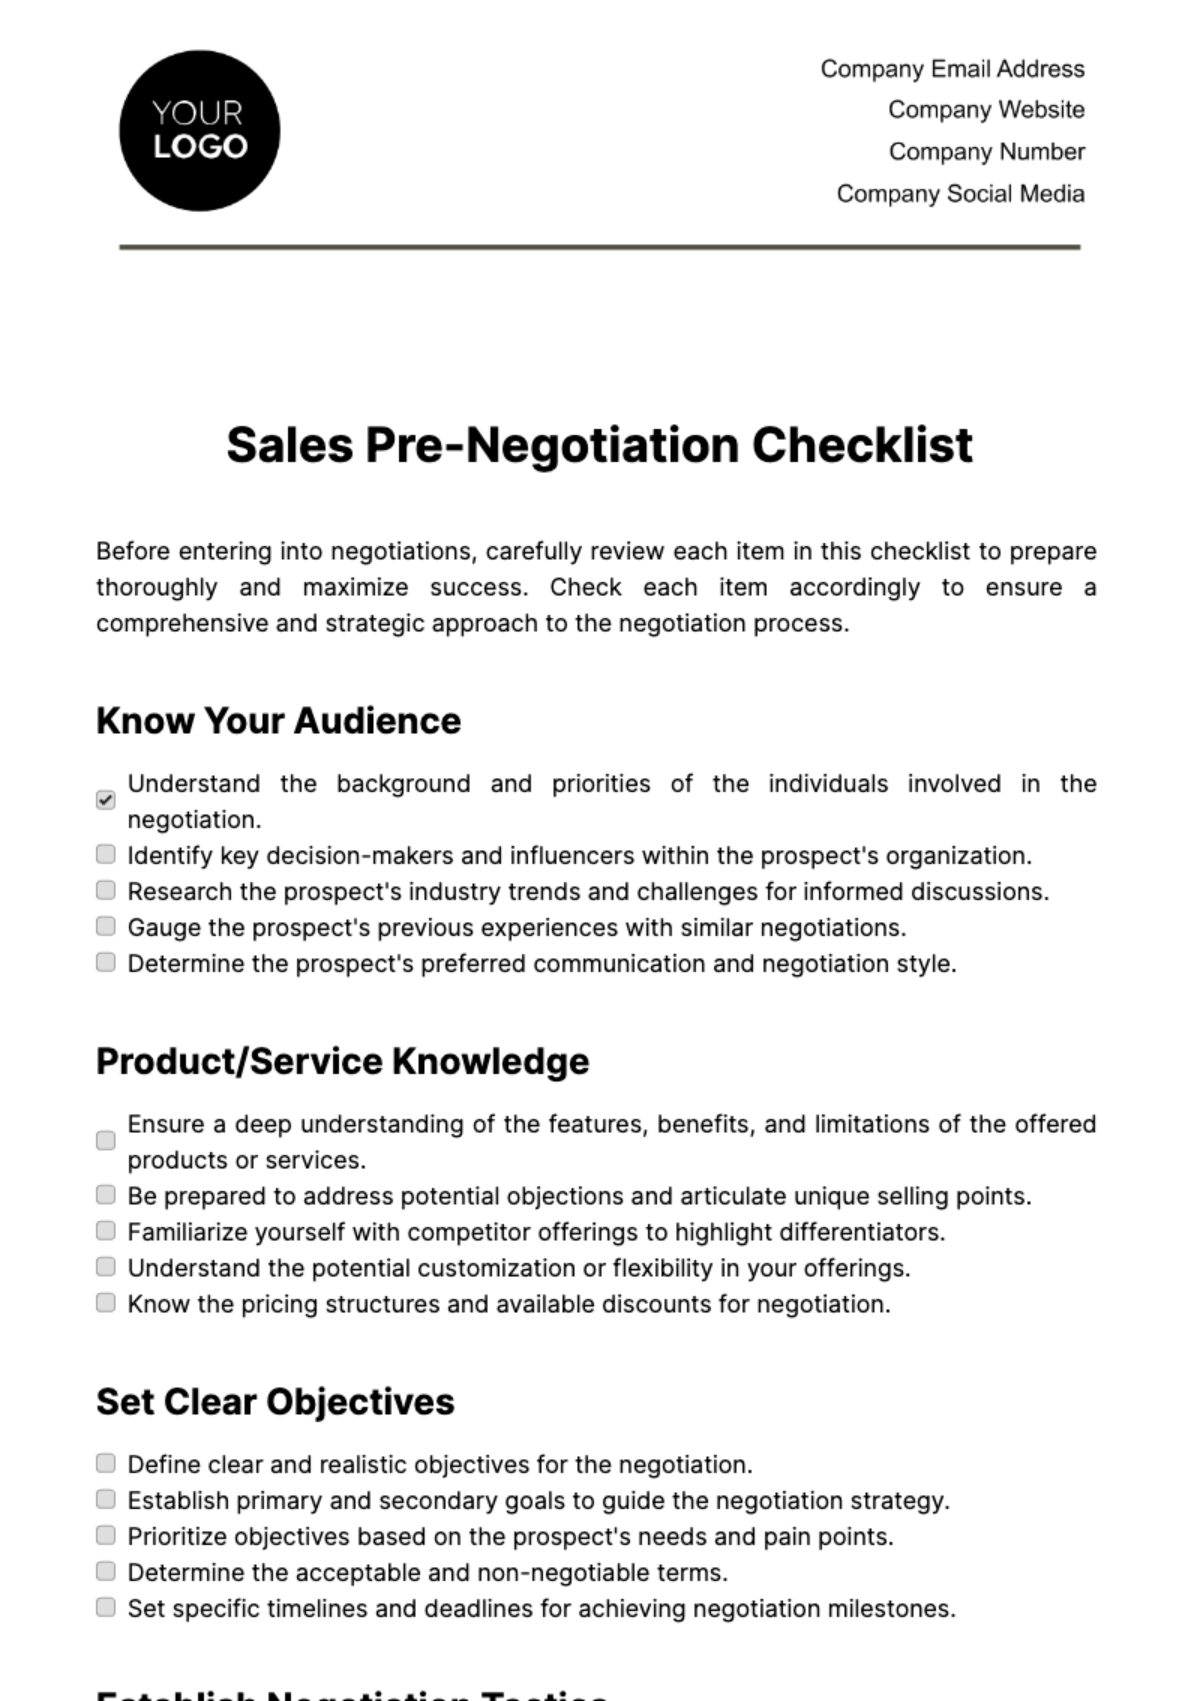 Sales Pre-Negotiation Checklist Template